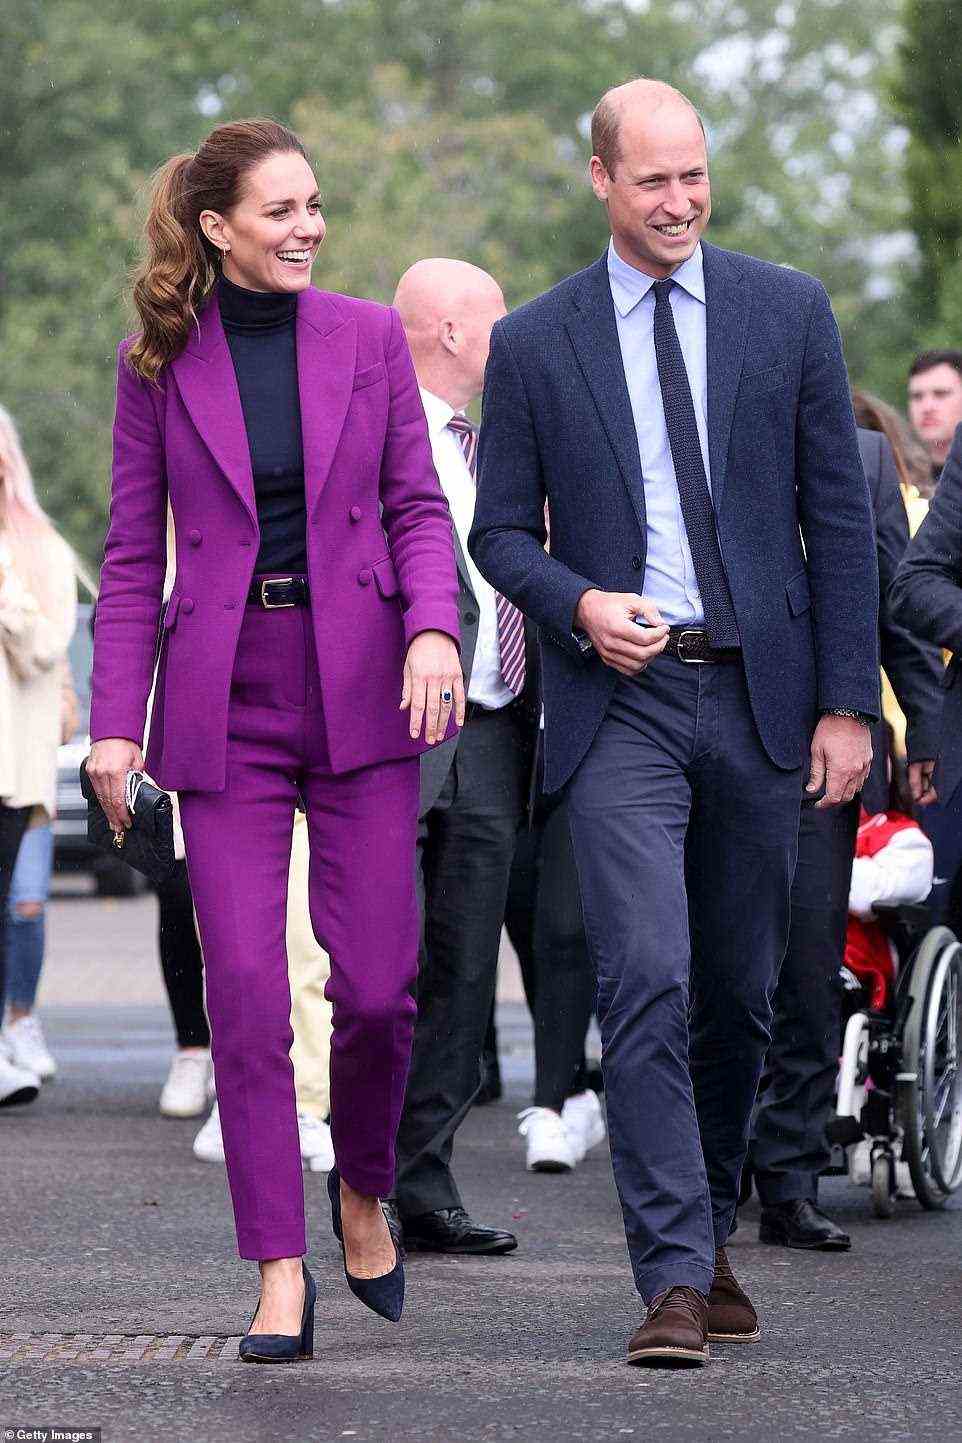 Die Herzogin von Cambridge machte eine elegante Figur, als sie heute mit Prinz William Nordirland in einem magentafarbenen Hosenanzug besuchte